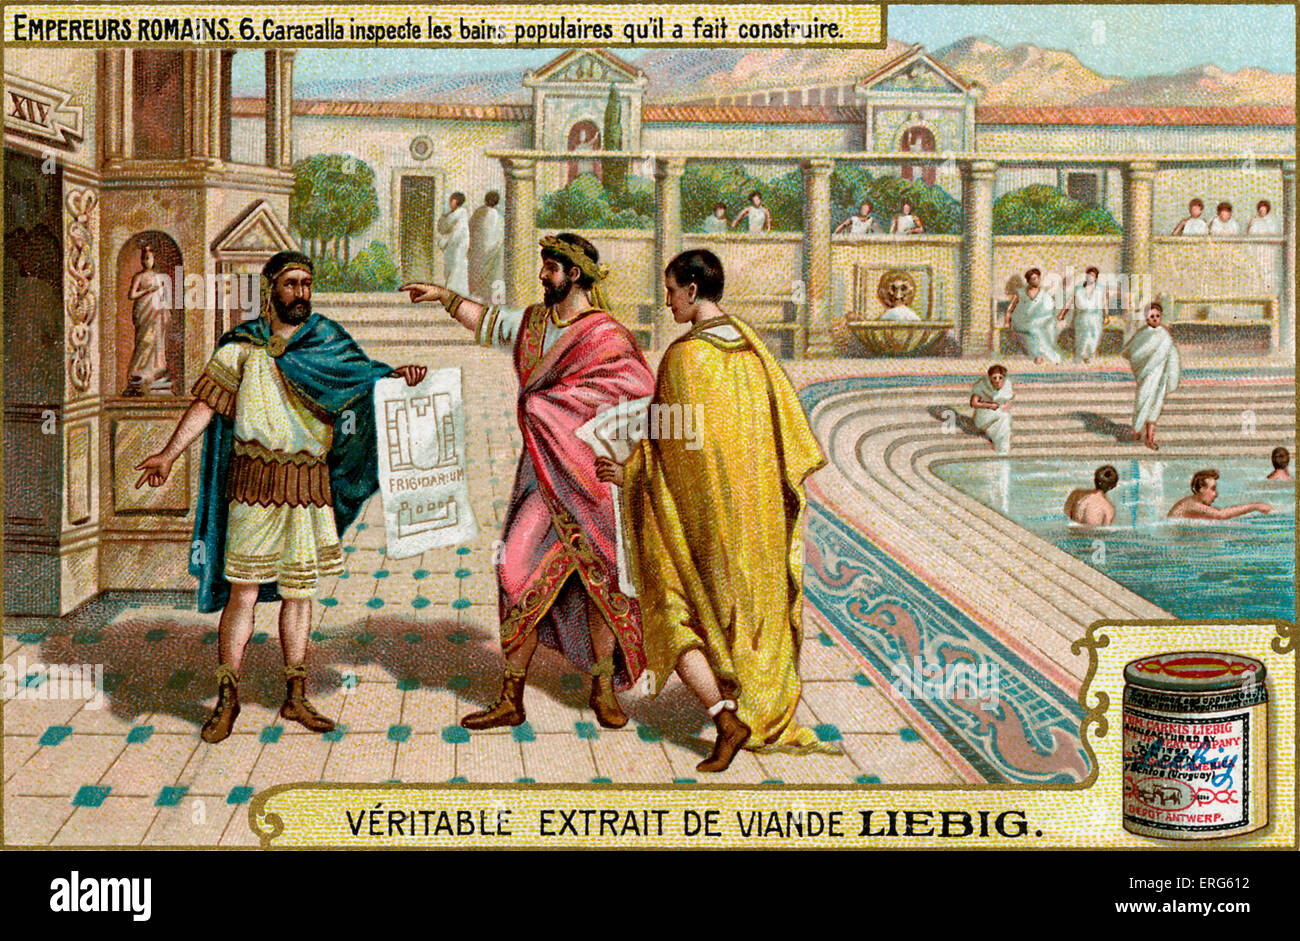 Roman Emperors - Liebig Fleisch Extrakt Sammelkartenspiel, 1907. Vignette mit Caracalla inspizieren die Bäder, die er gebaut hatte Stockfoto